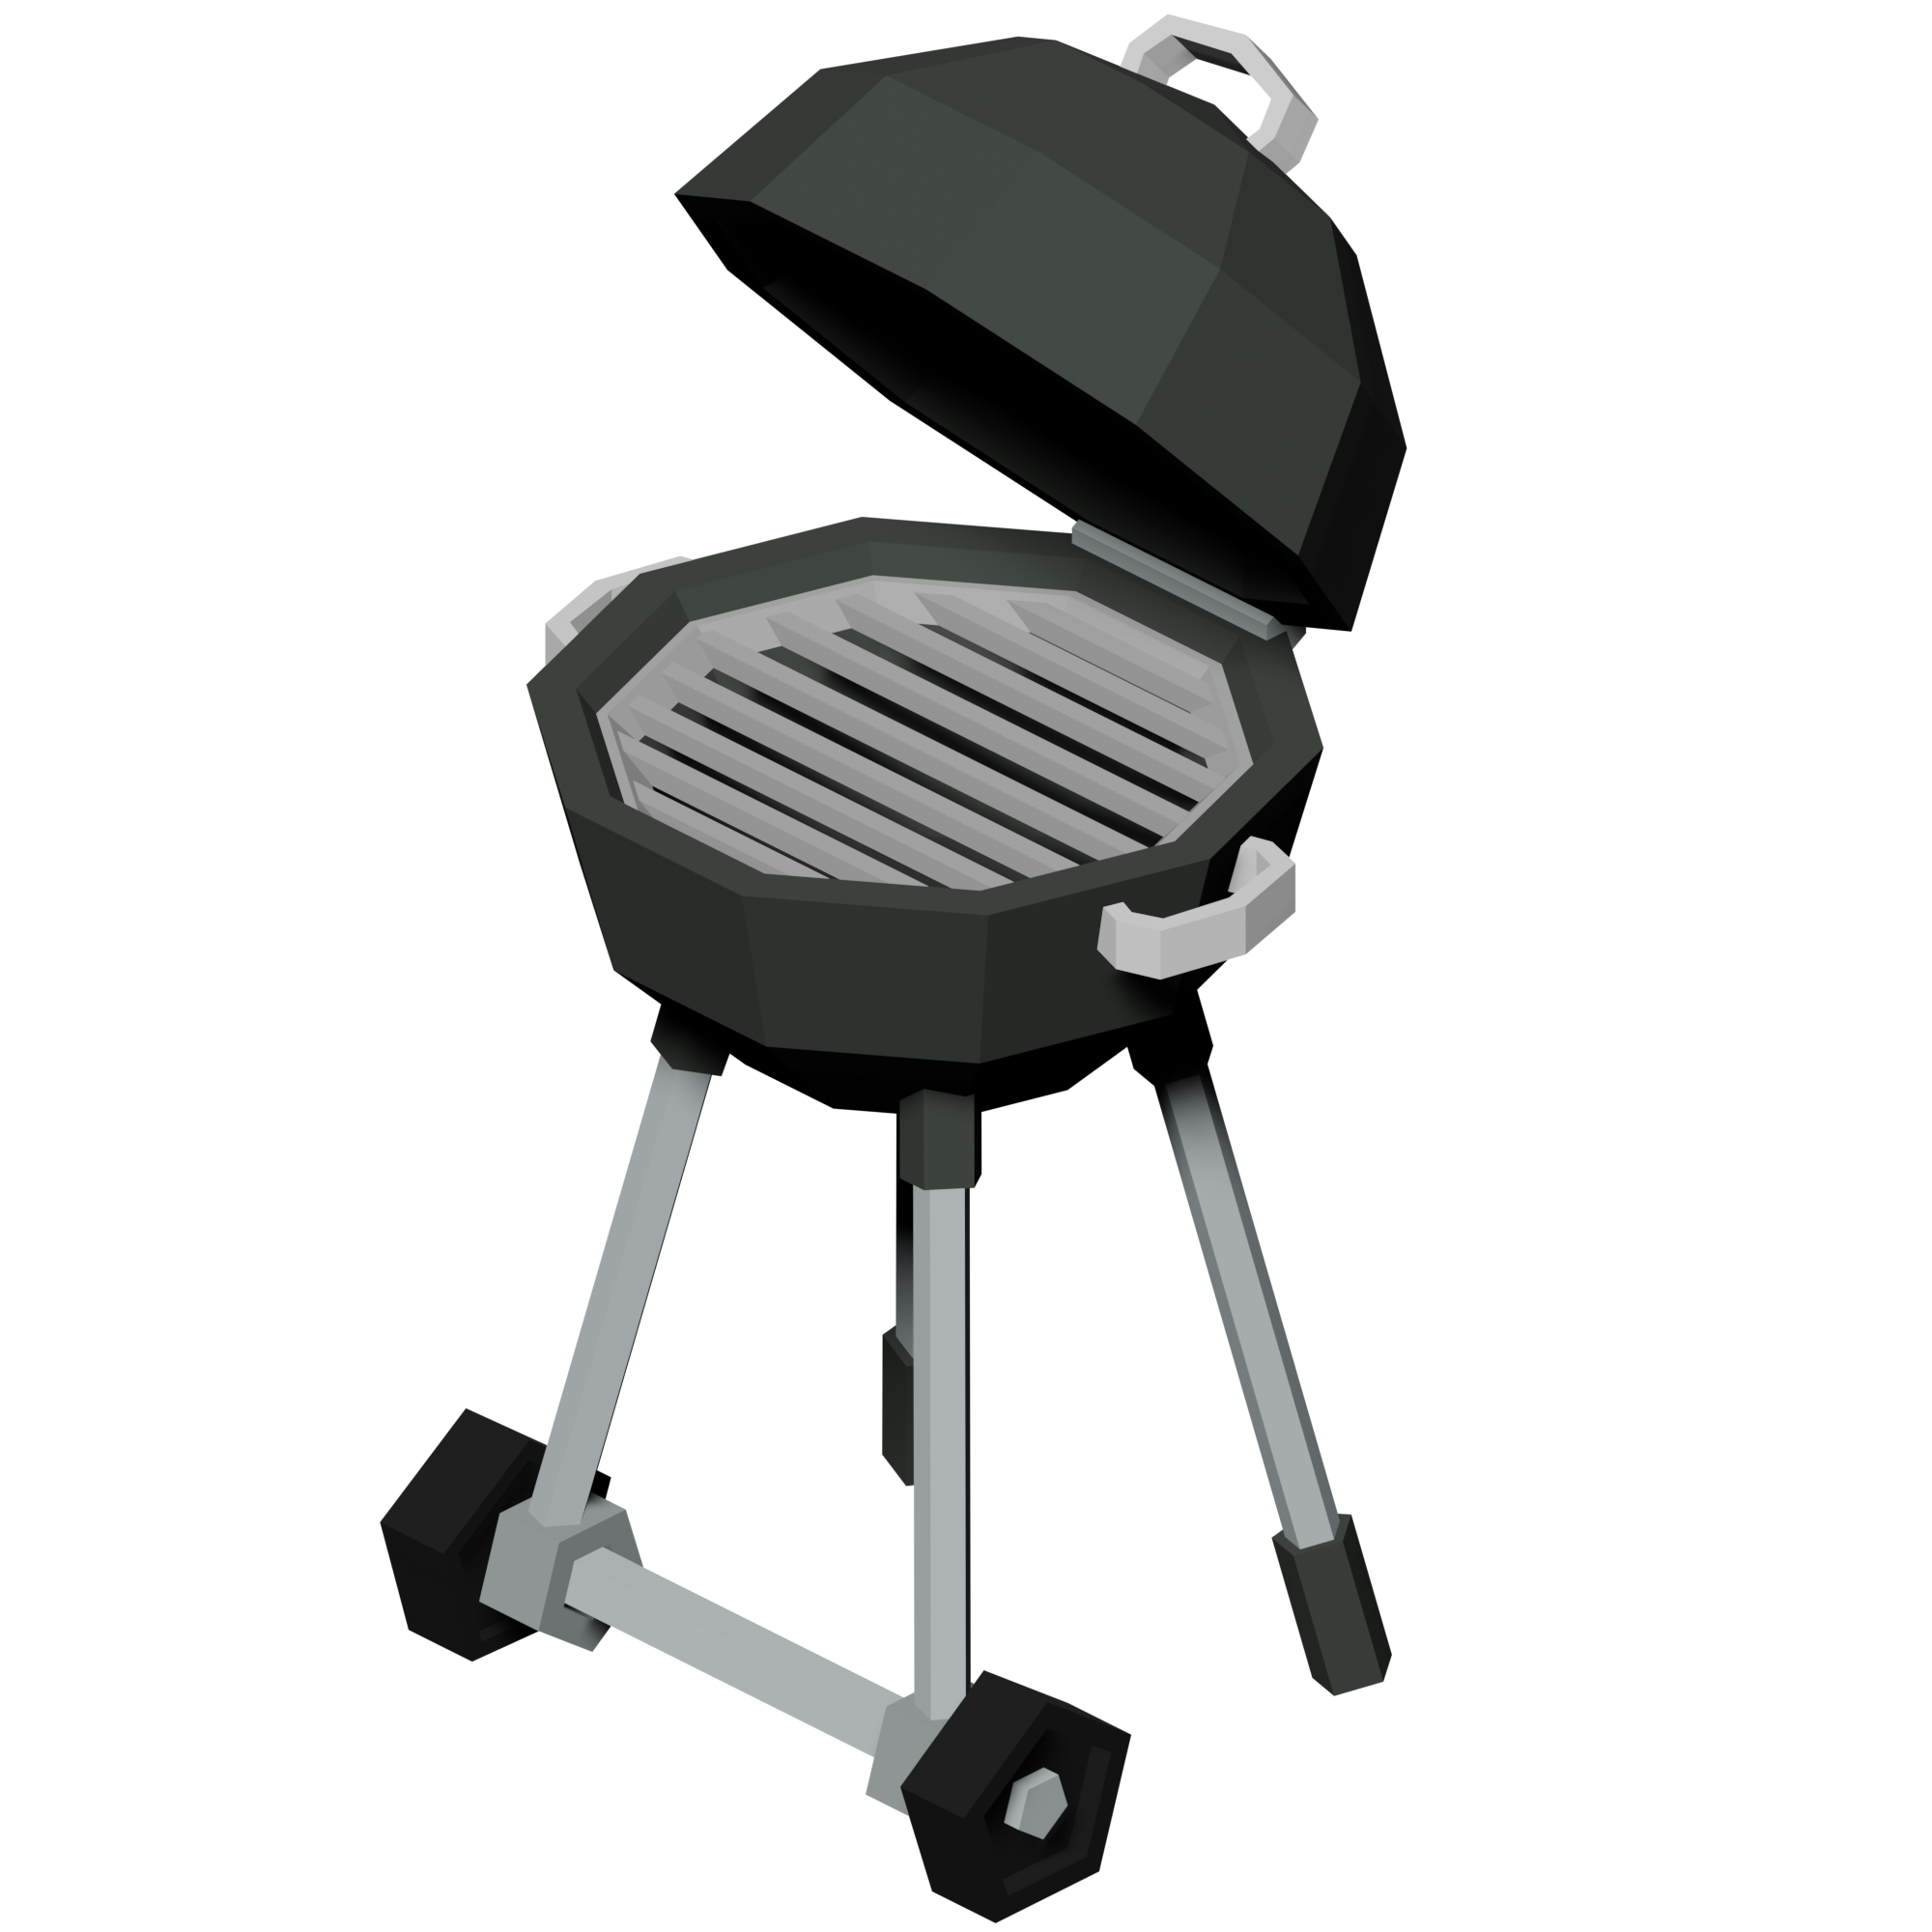 Barbecue Islands Wikia Fandom - grill roblox